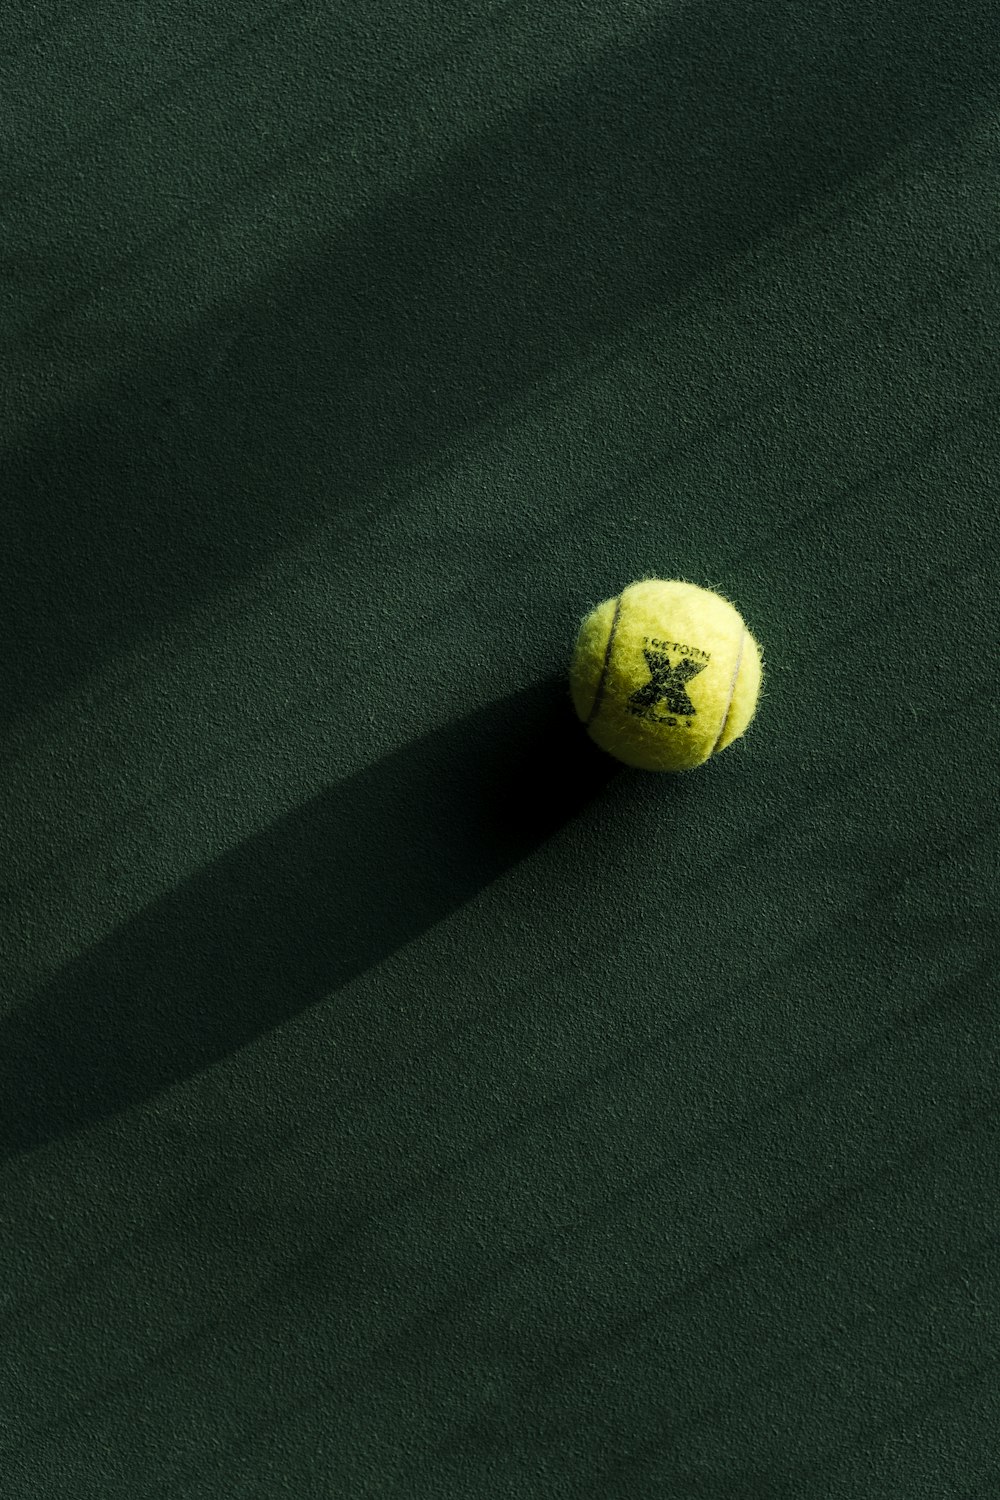 影のある緑のコートのテニスボール